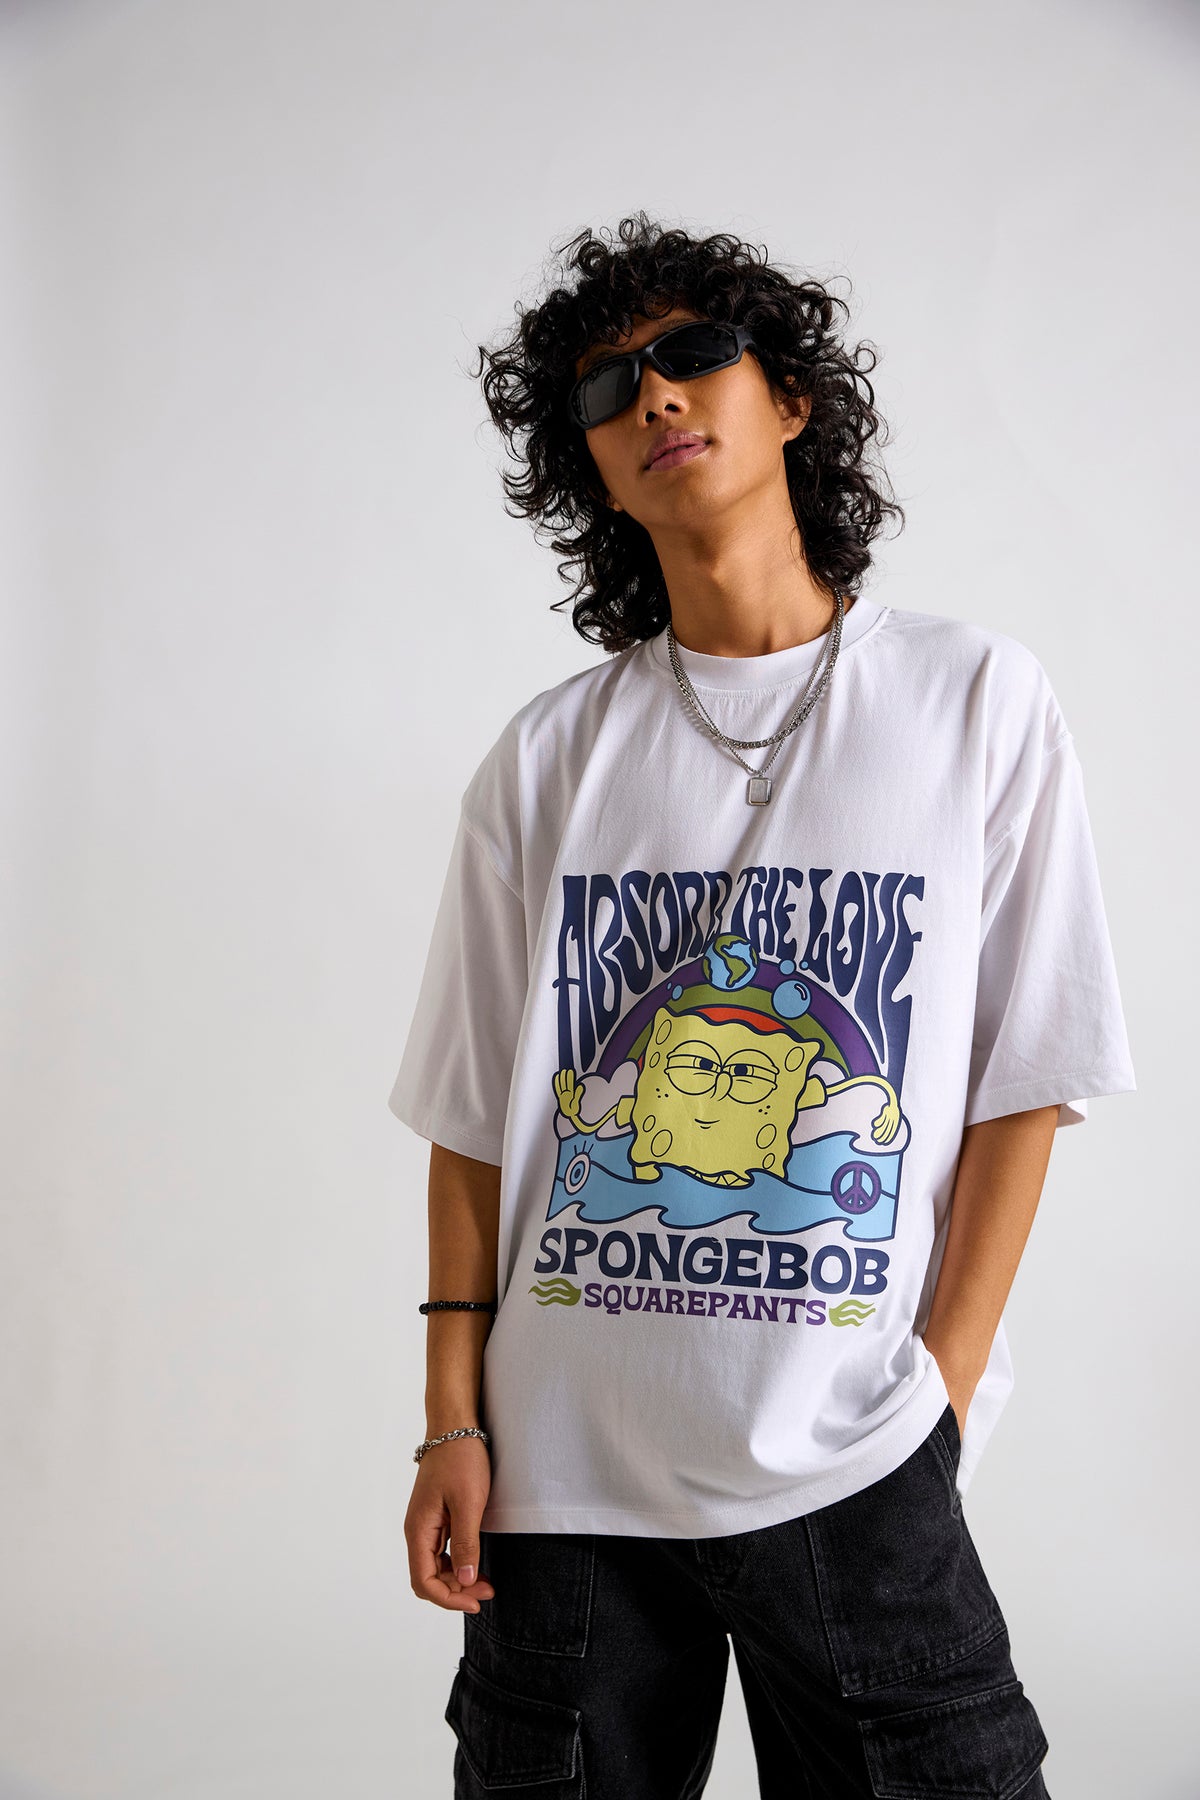 Spongebob: Abosrb the Love Men's Oversized T-shirt-White